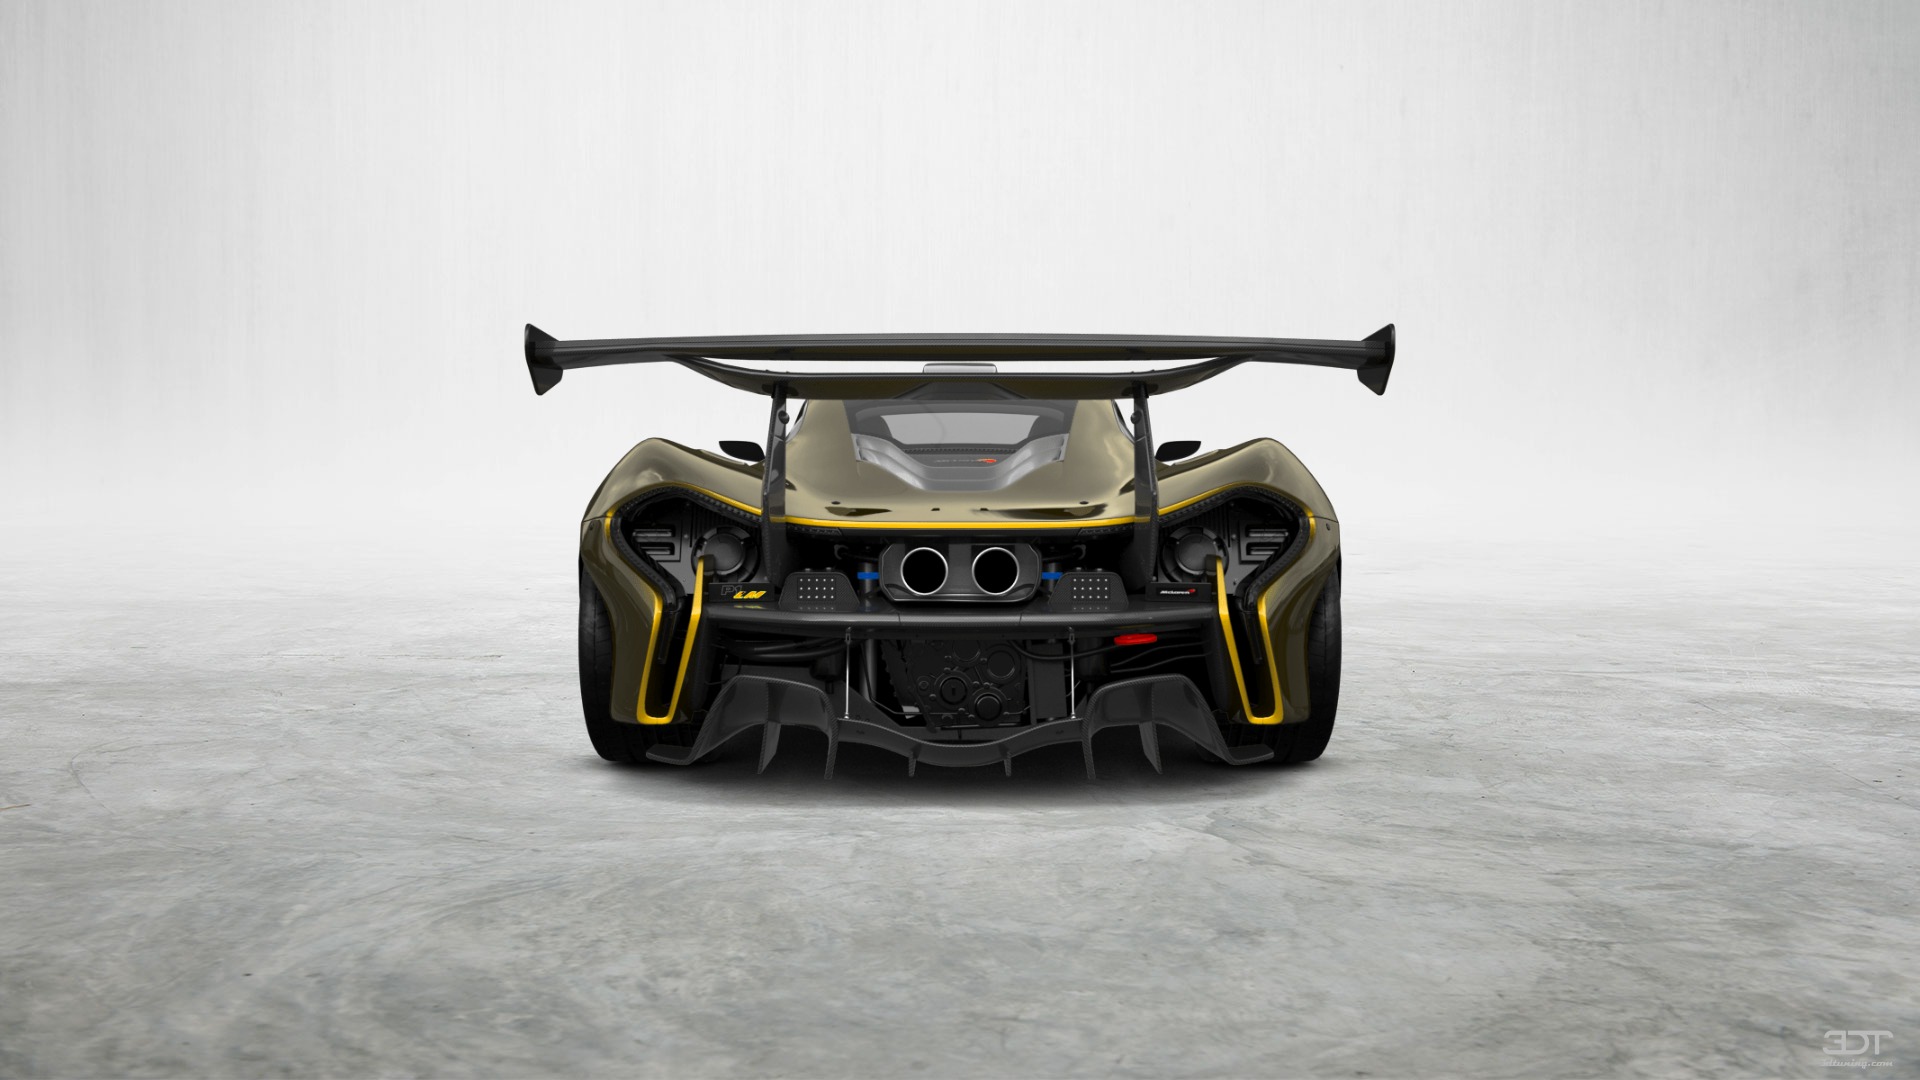 McLaren P1 2 Door Coupe 2013